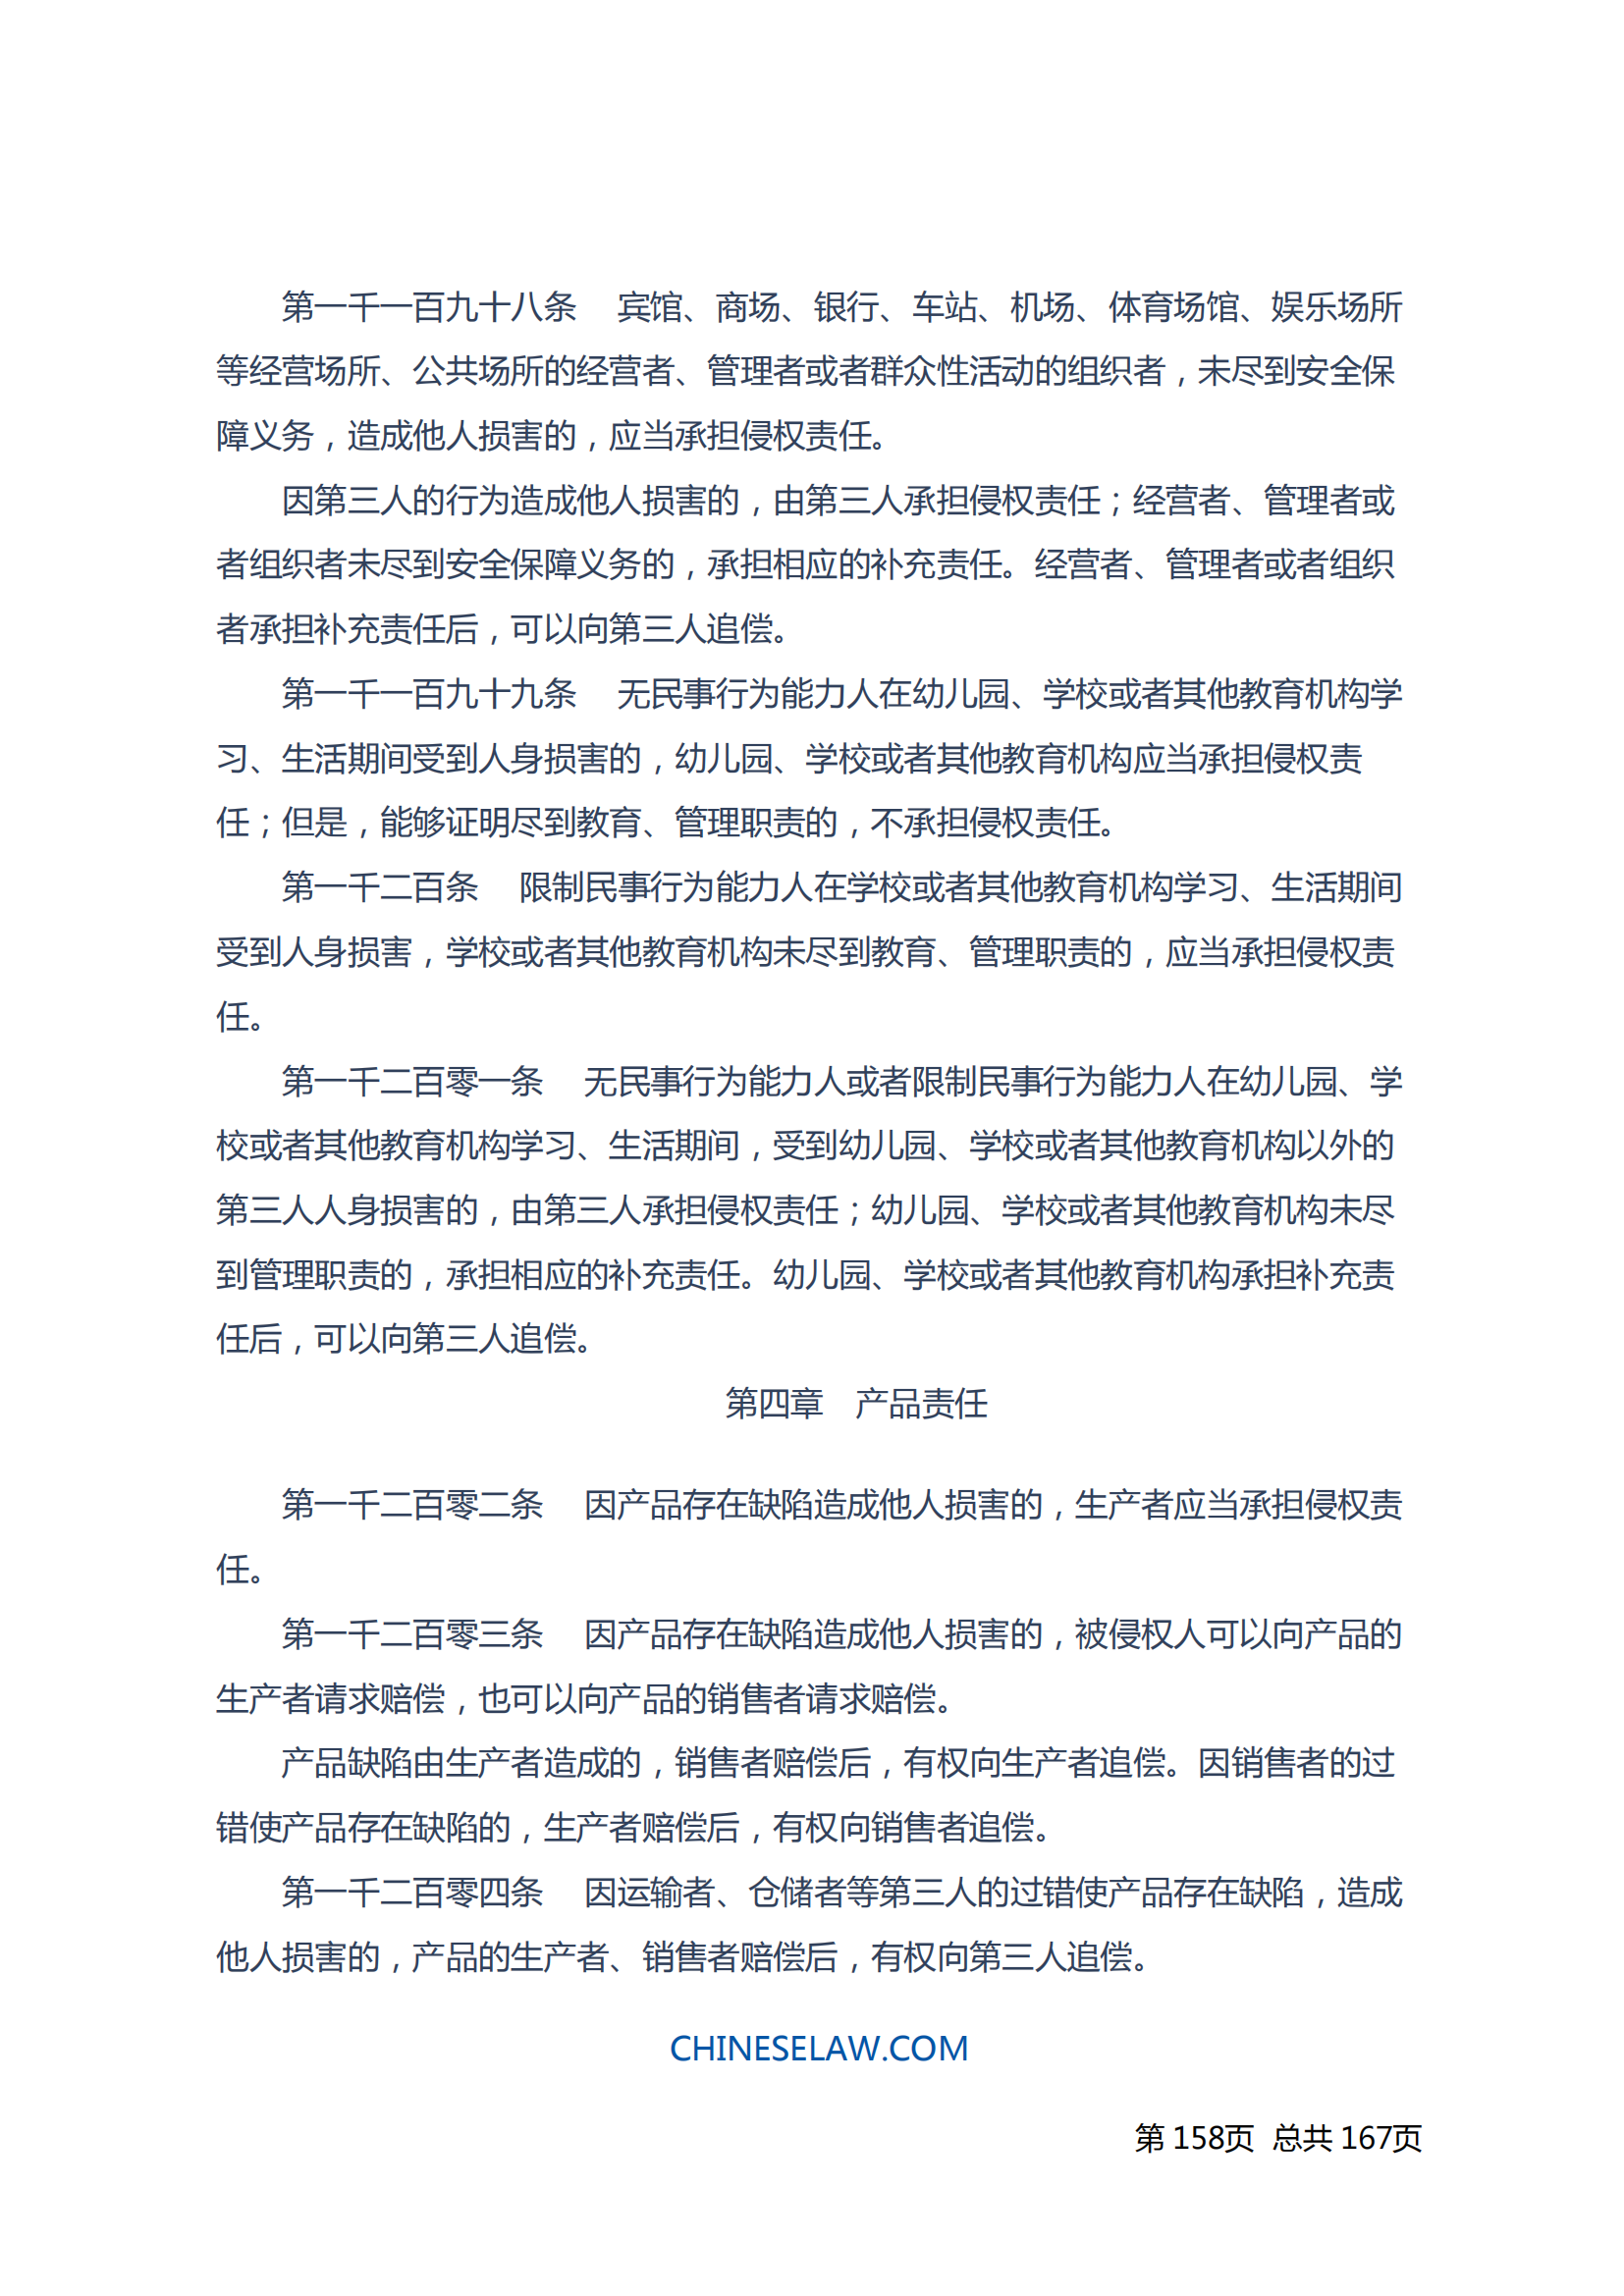 中华人民共和国民法典_157